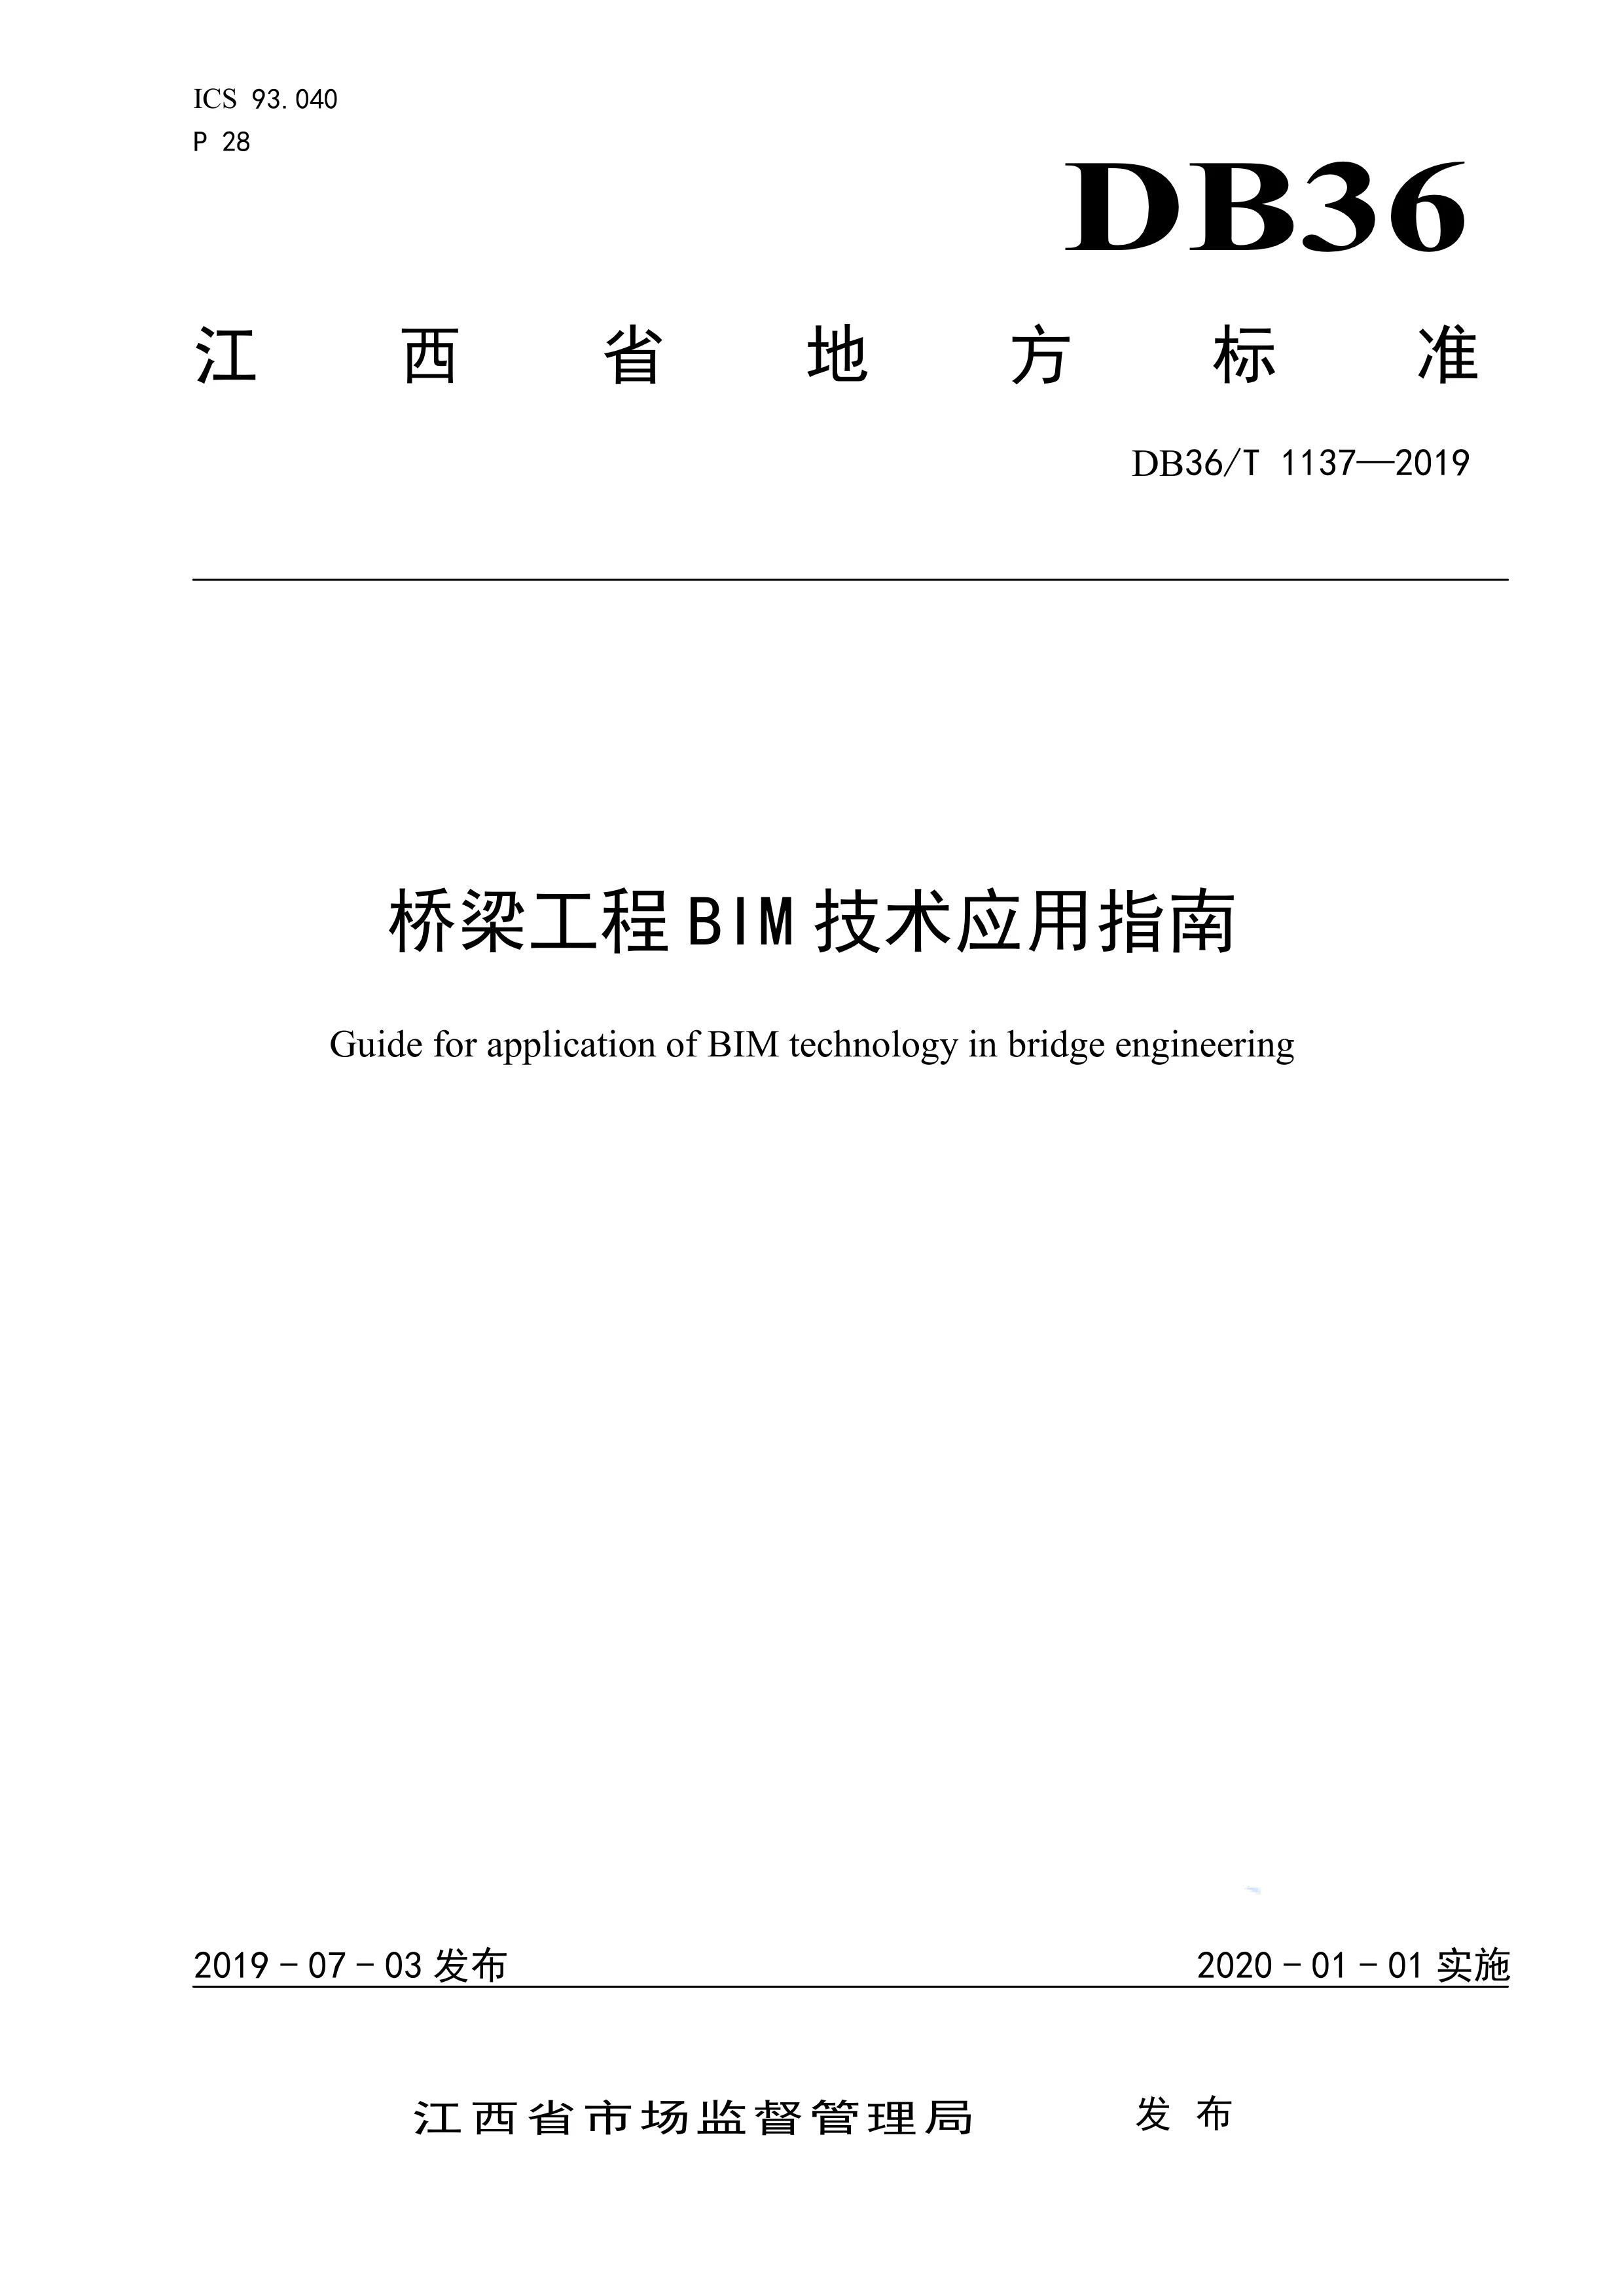 政策-江西省桥梁工程BIM技术应用指南